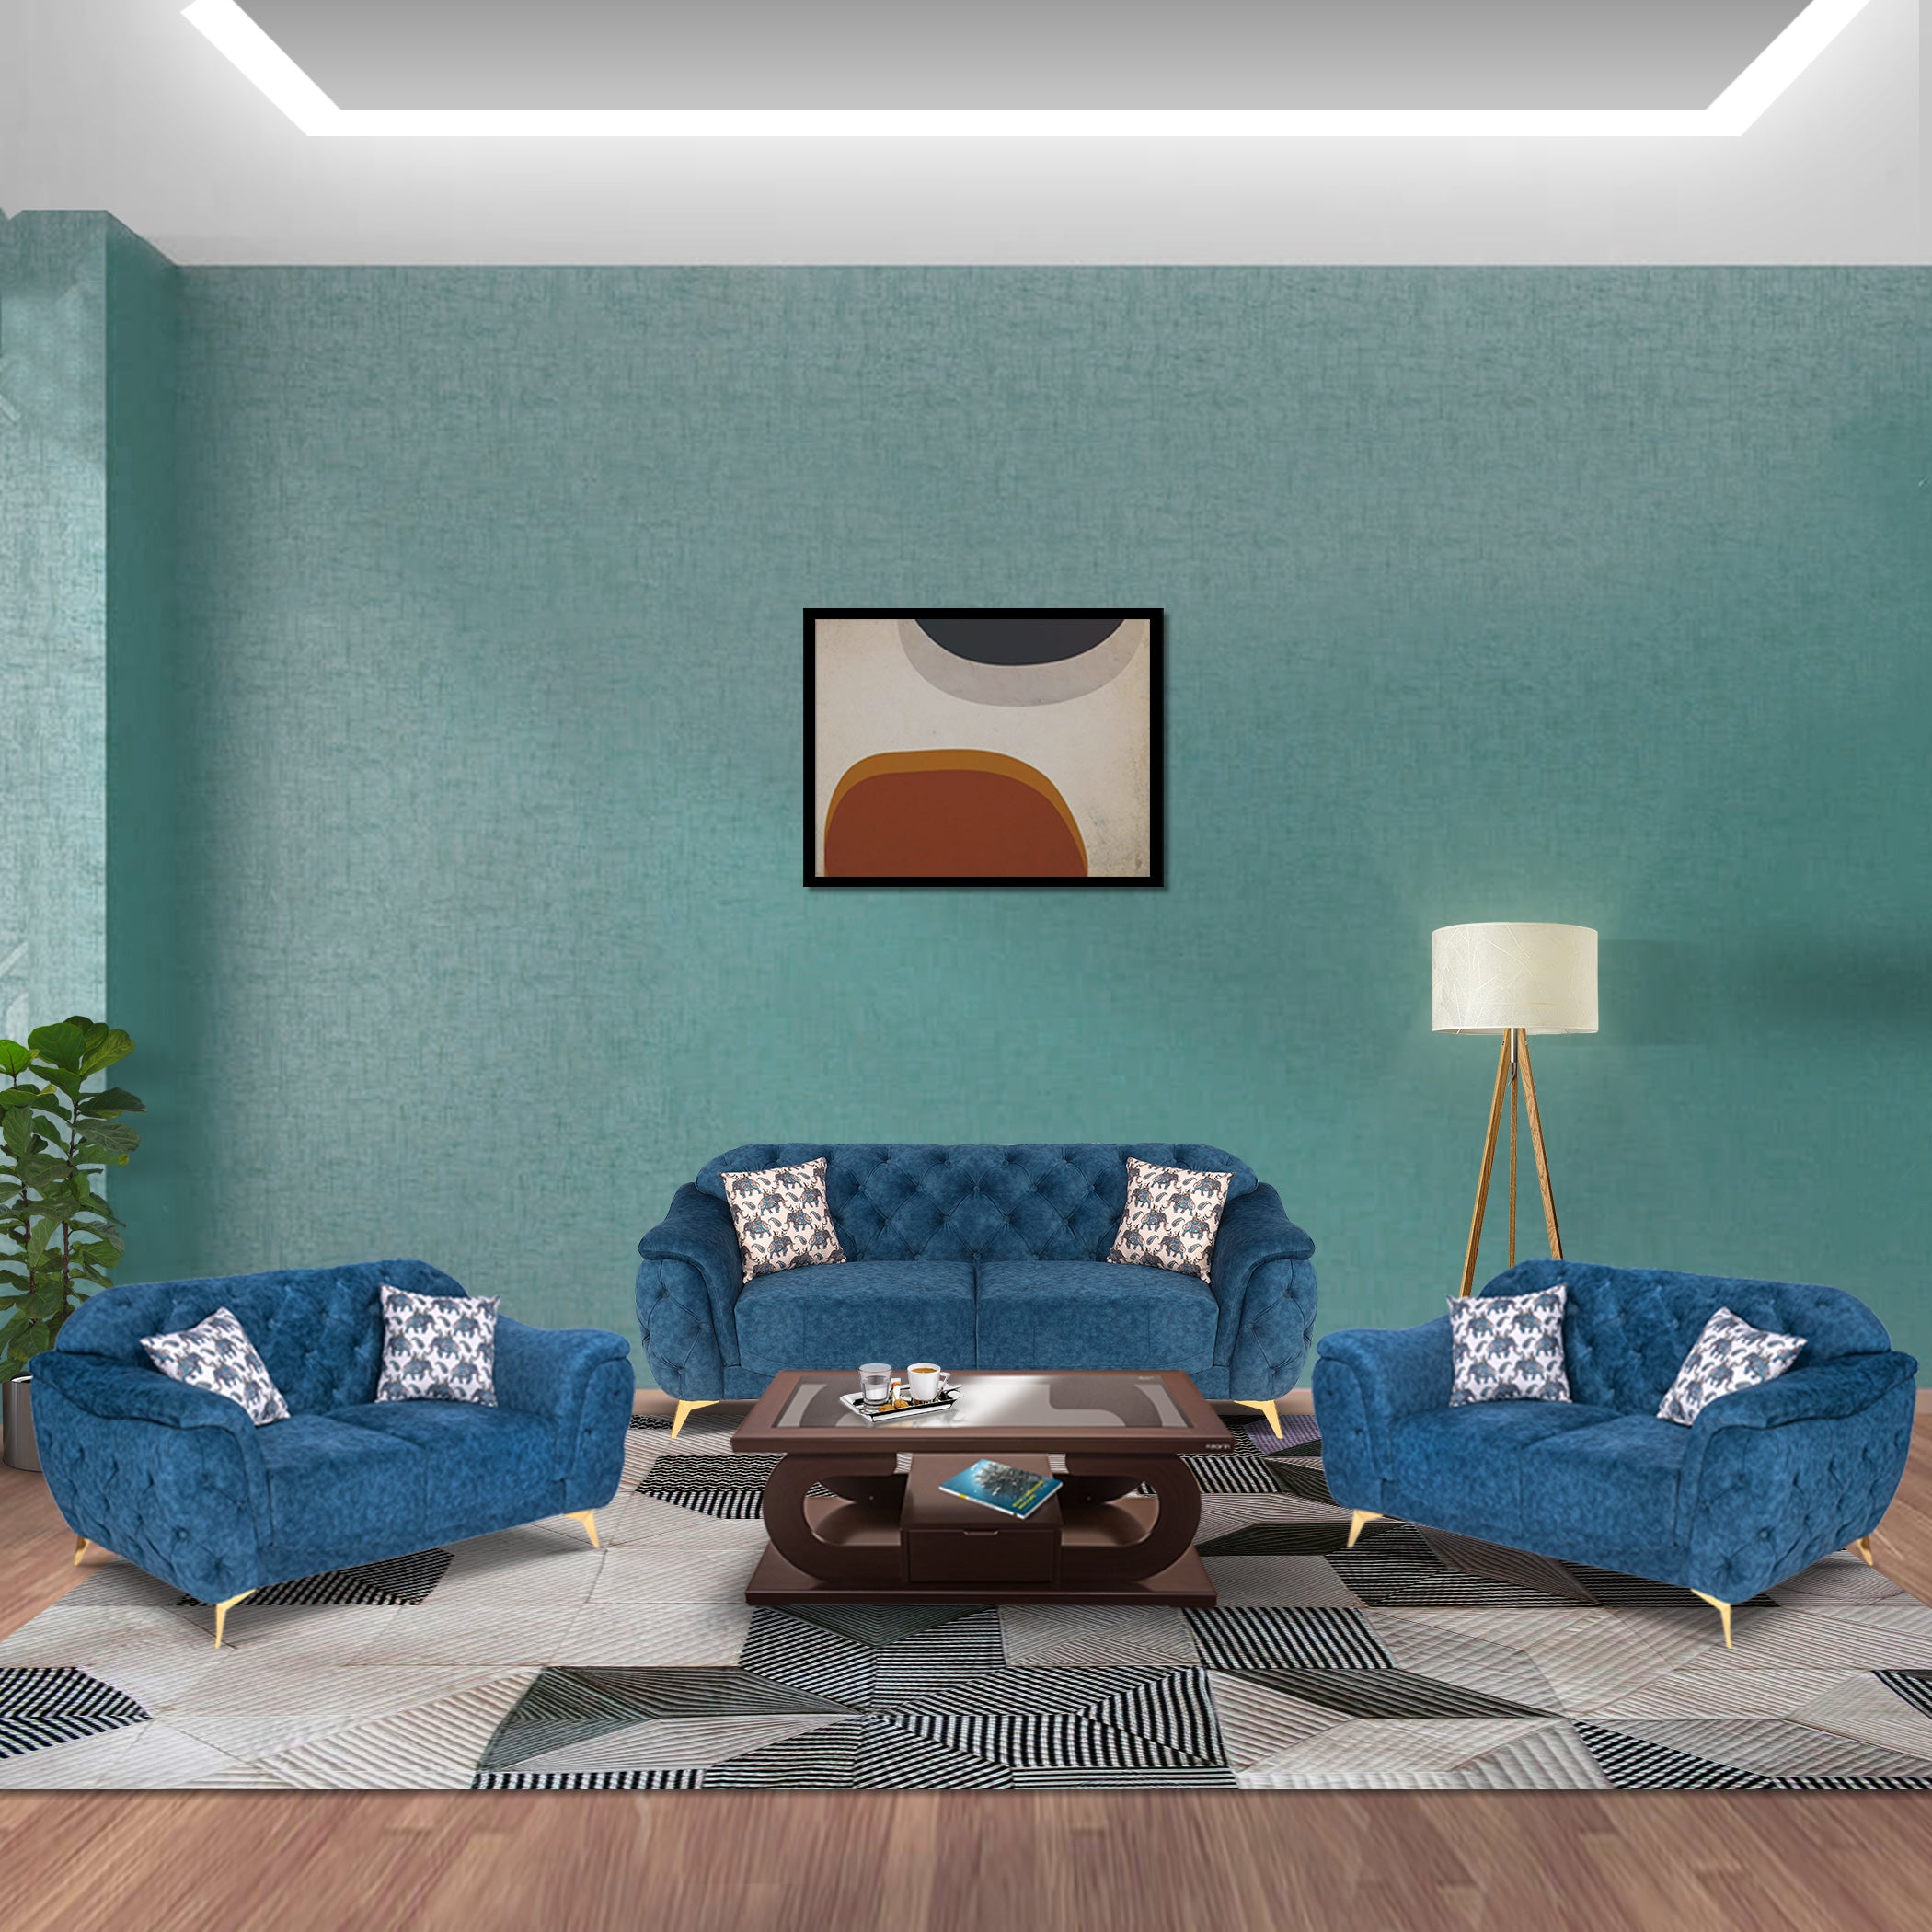 Denmark TexturedBlue 3S Sofa by Zorin Zorin